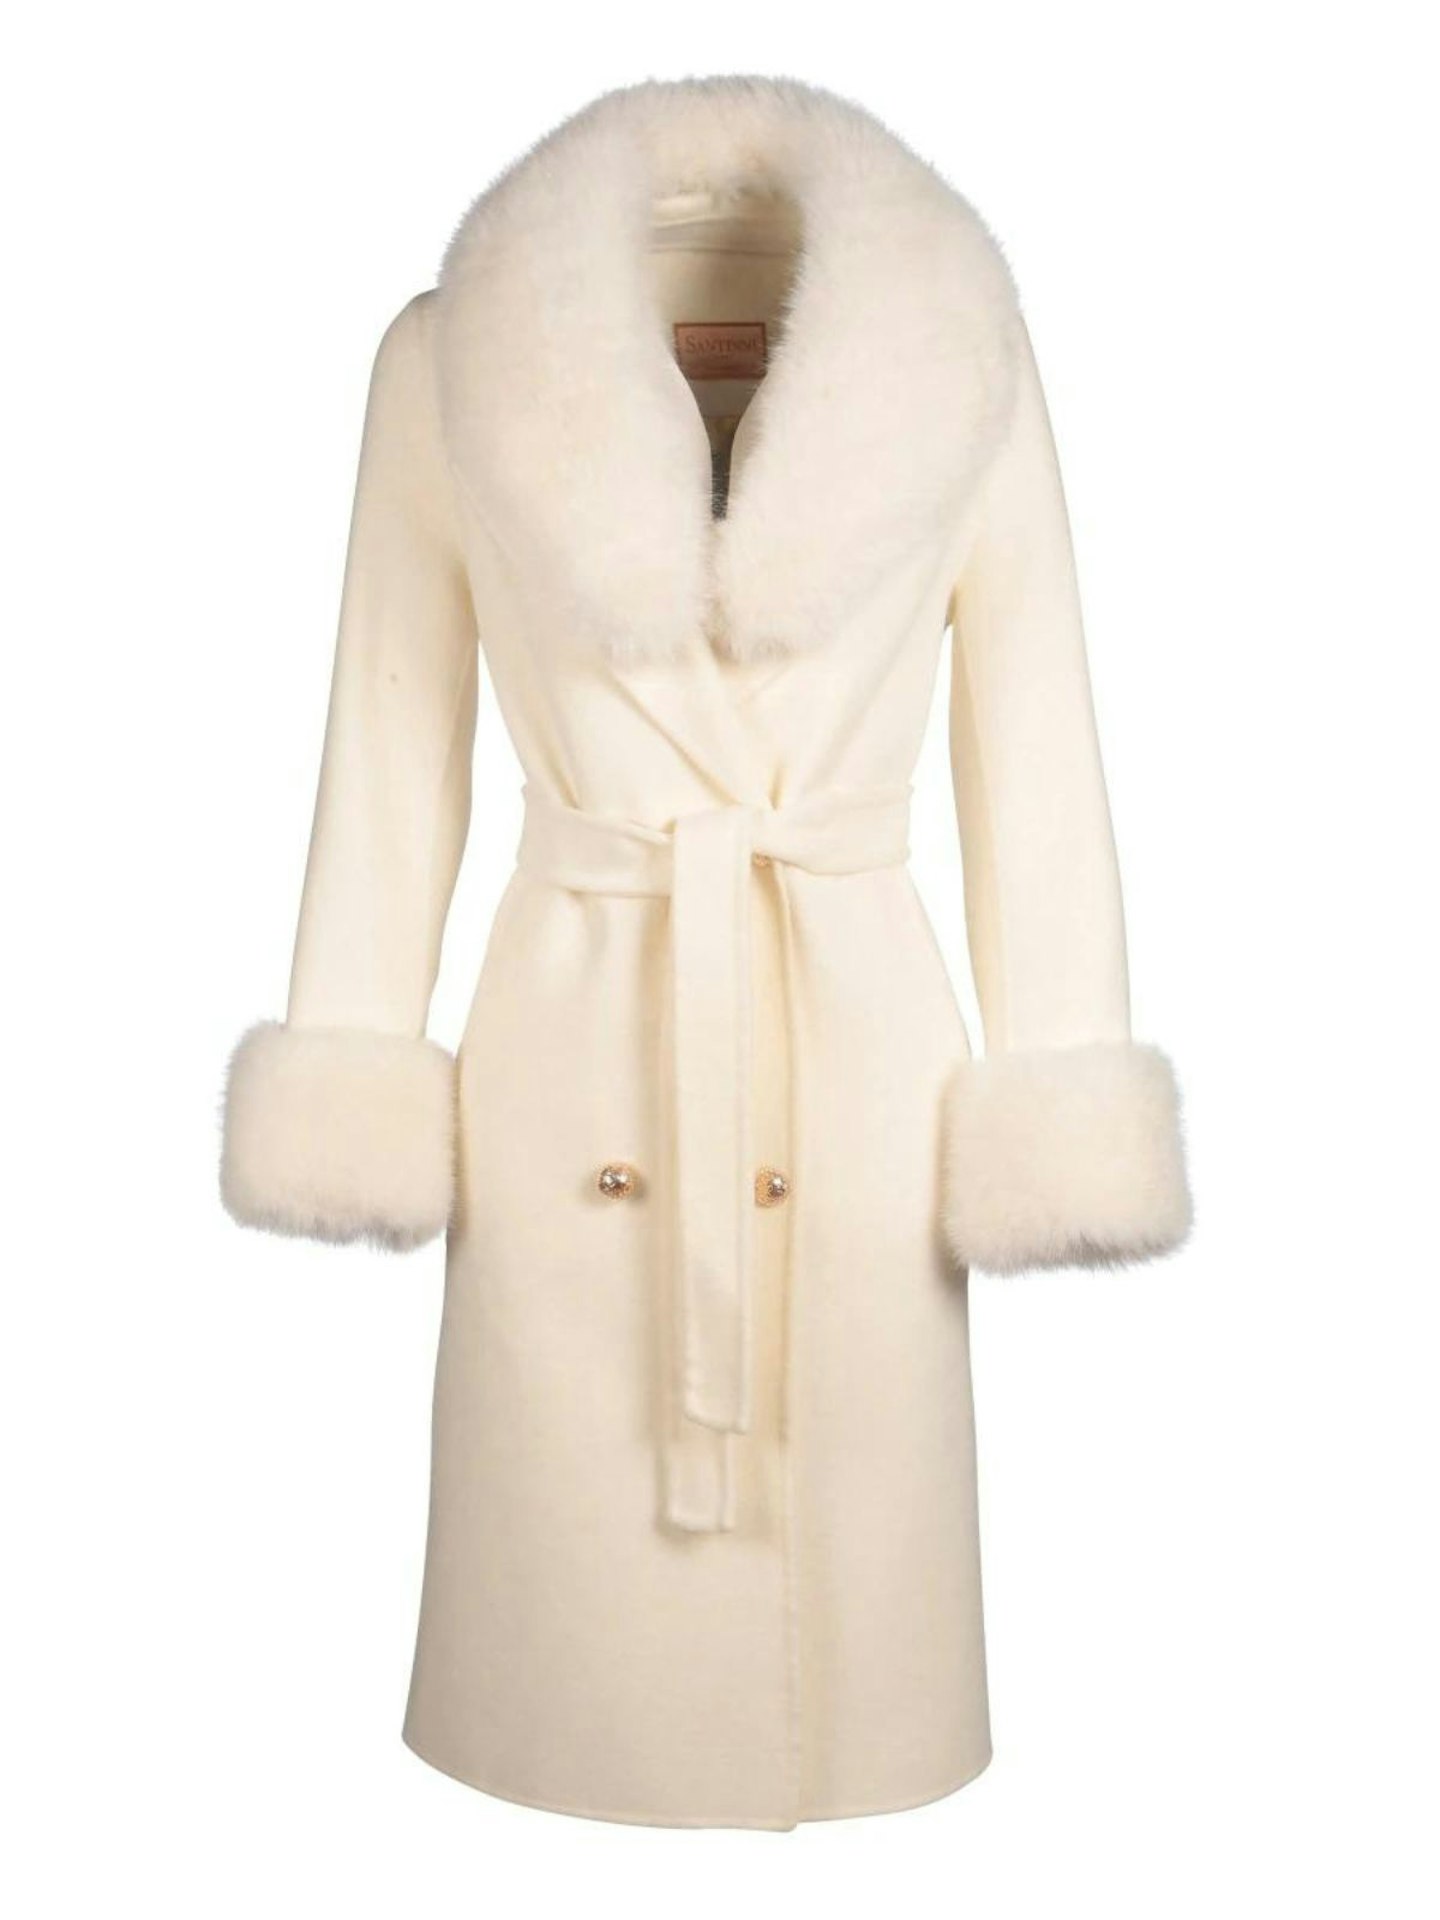 Taurus - Santinni Marlene Wool Coat